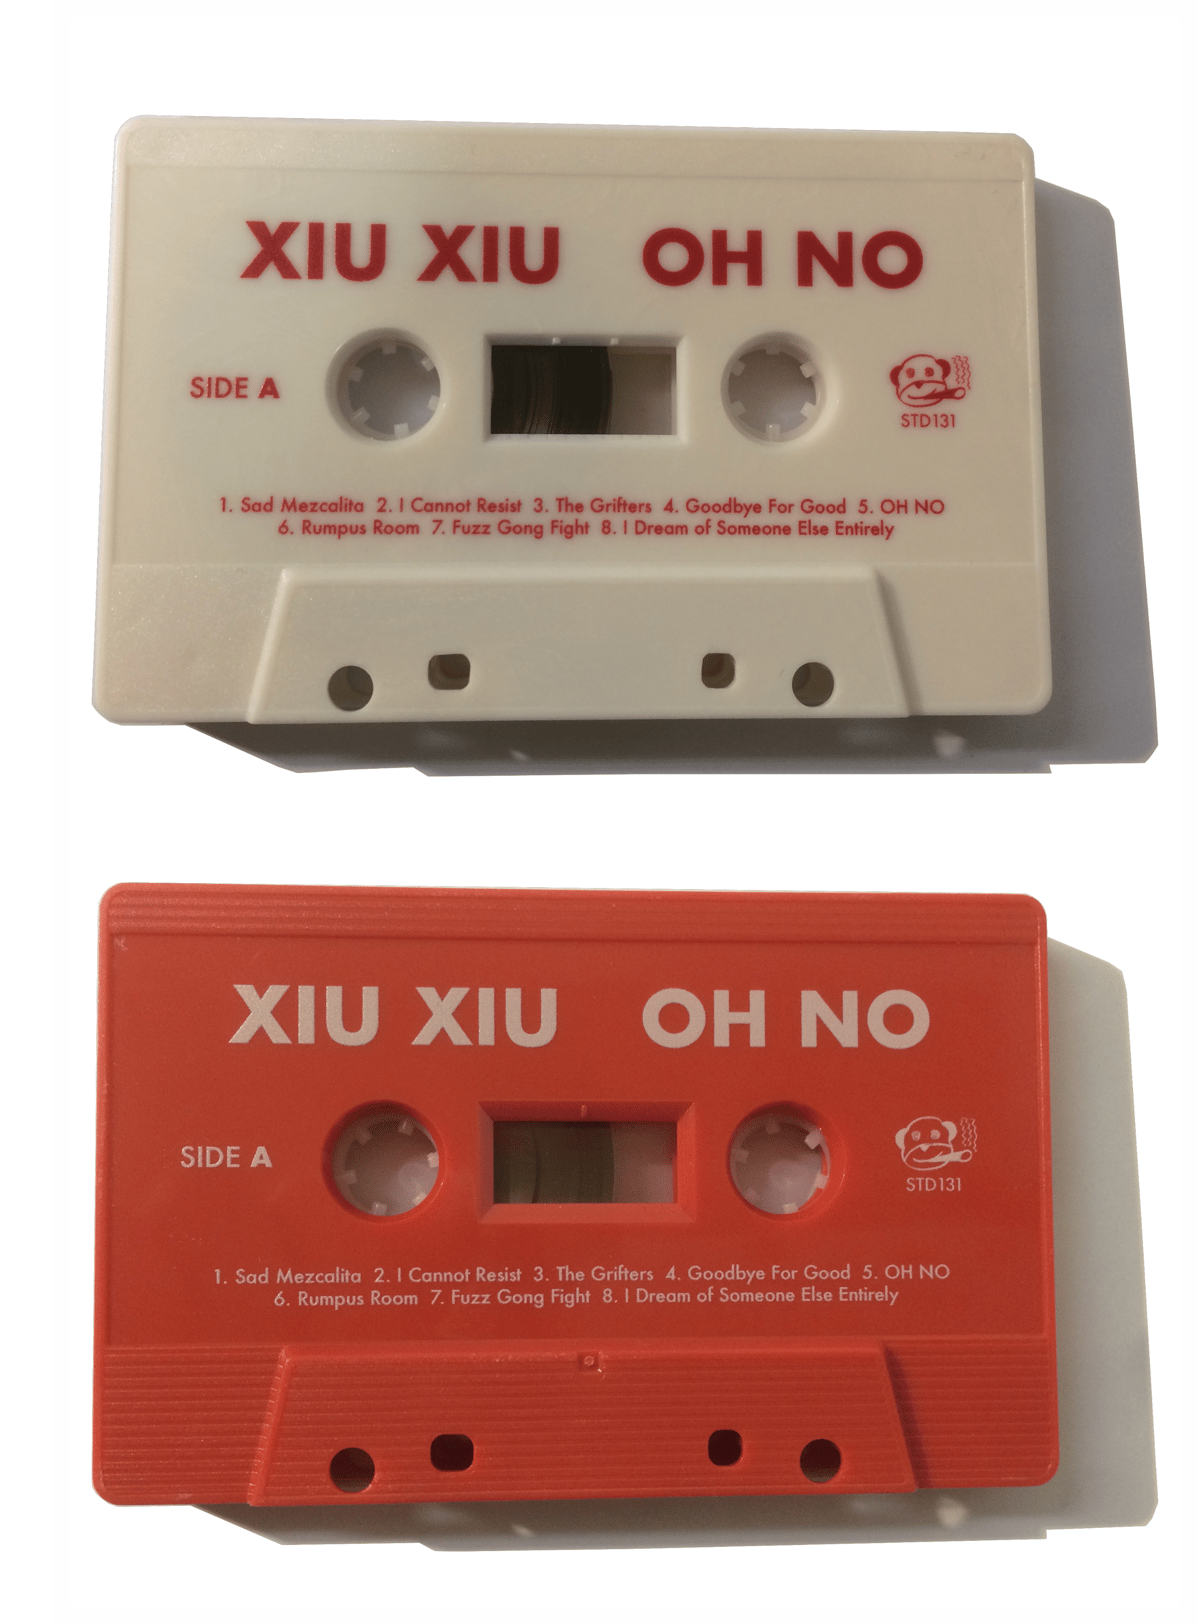 XIU XIU - OH NO (2021), audio tape